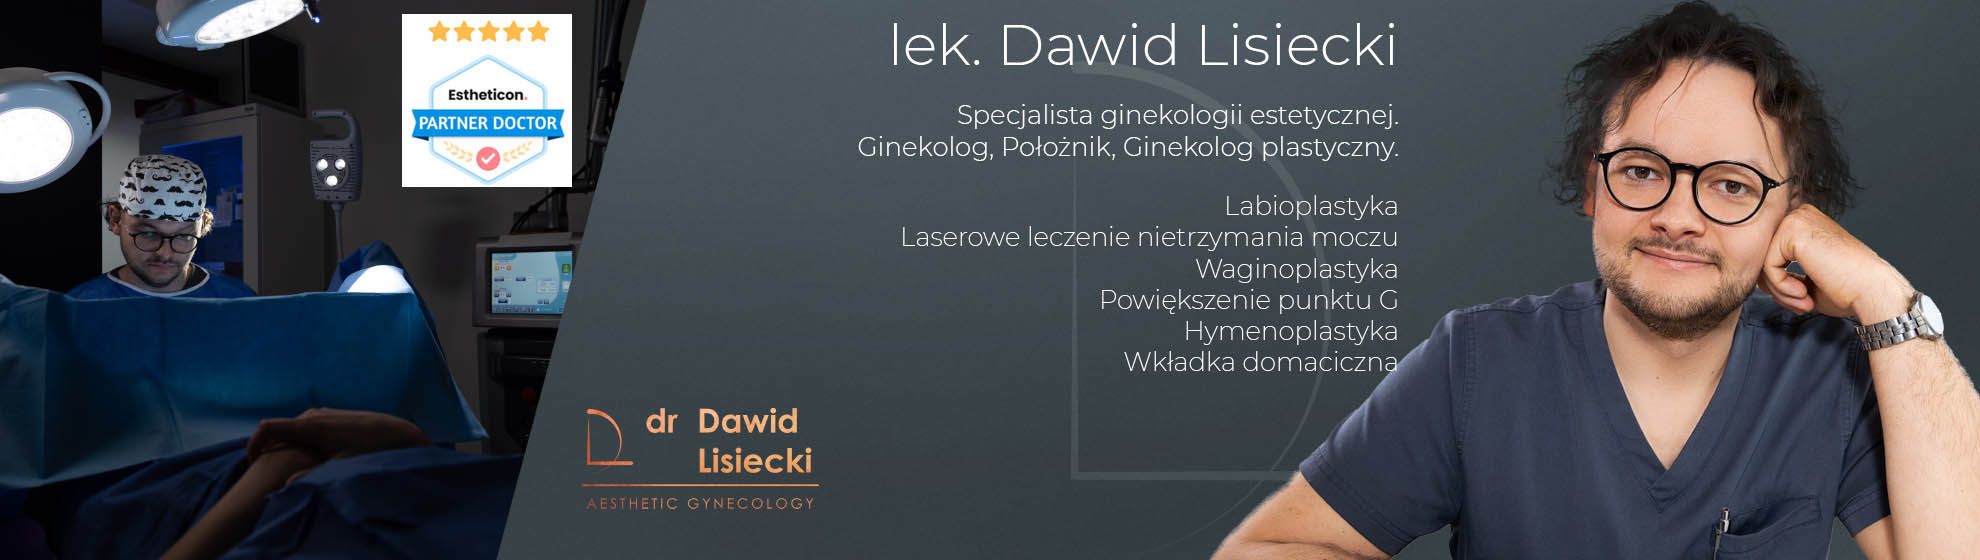 Dr Dawid Lisiecki - ginekologia estetyczna i plastyczna